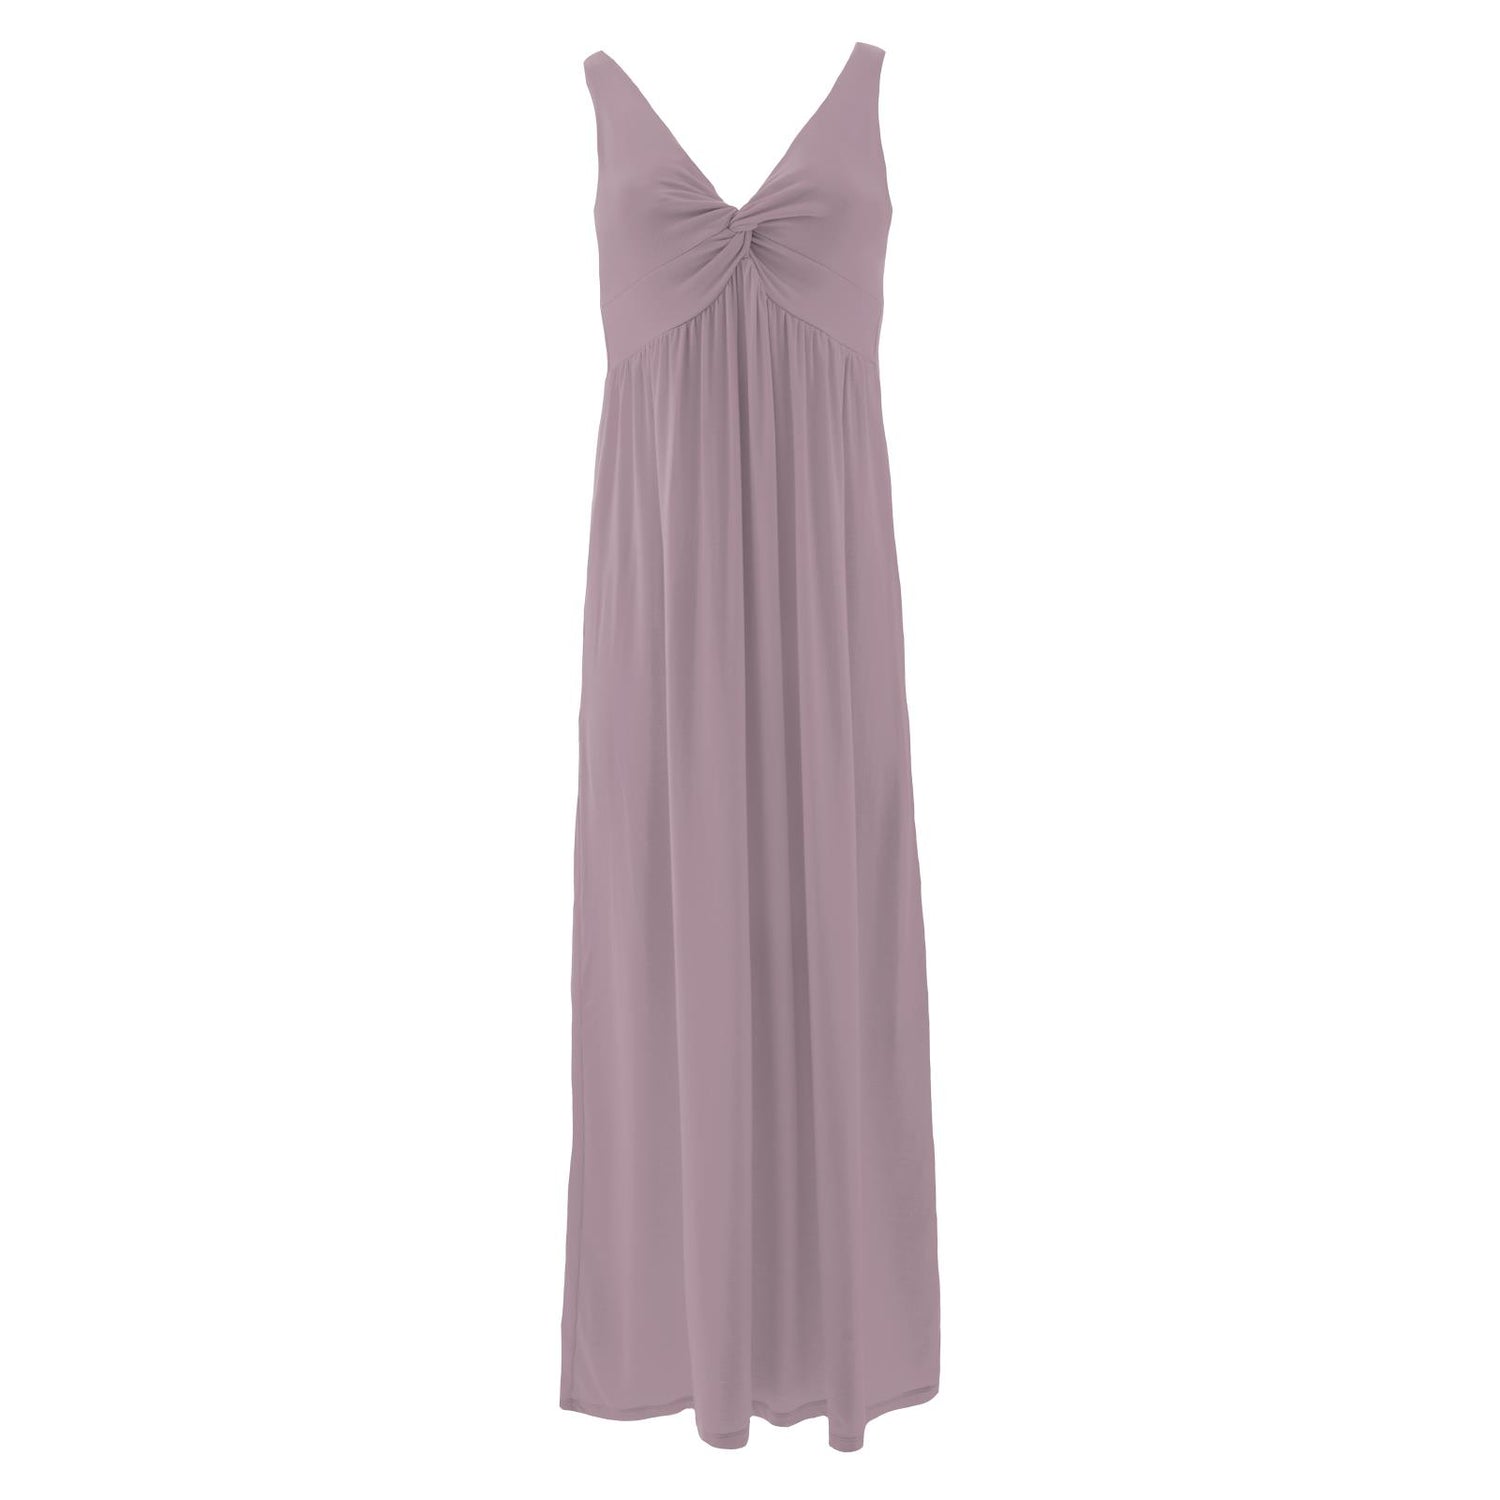 Women's Simple Twist Nightgown in Elderberry